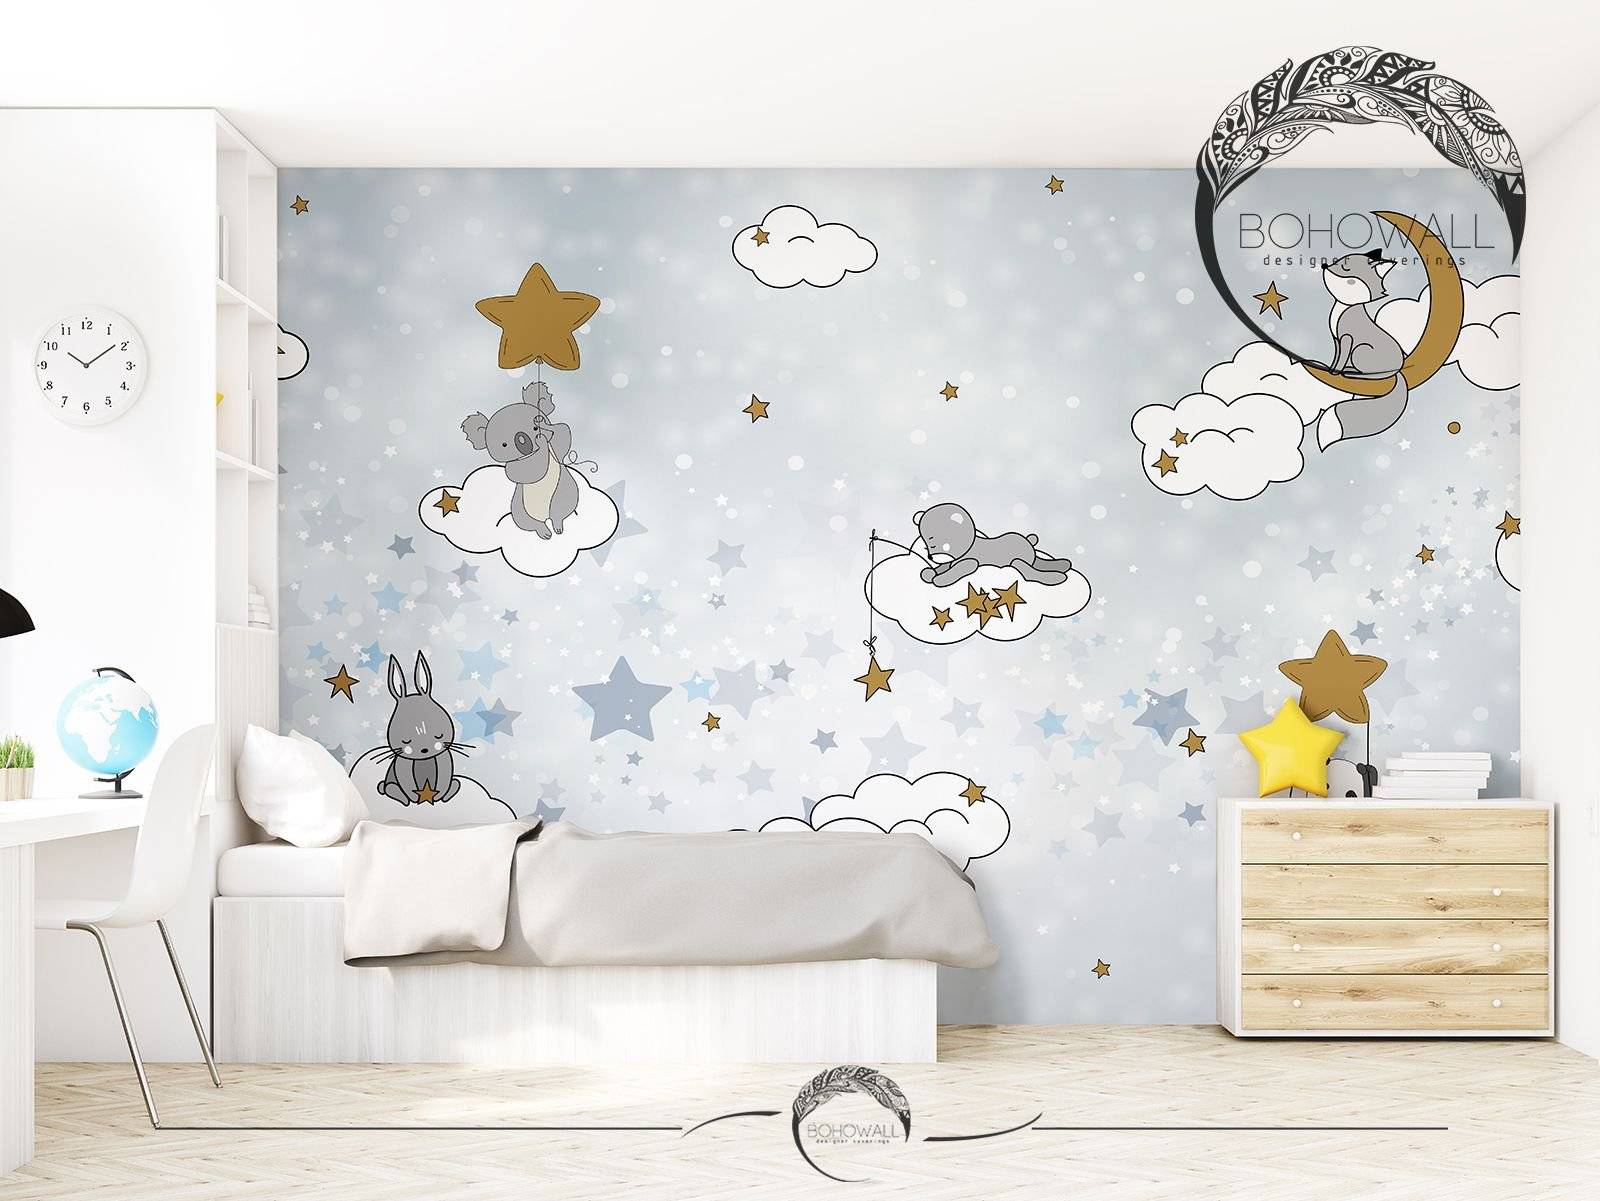 Потолок в детской комнате: красочное небо над маленькой страной | домфронт